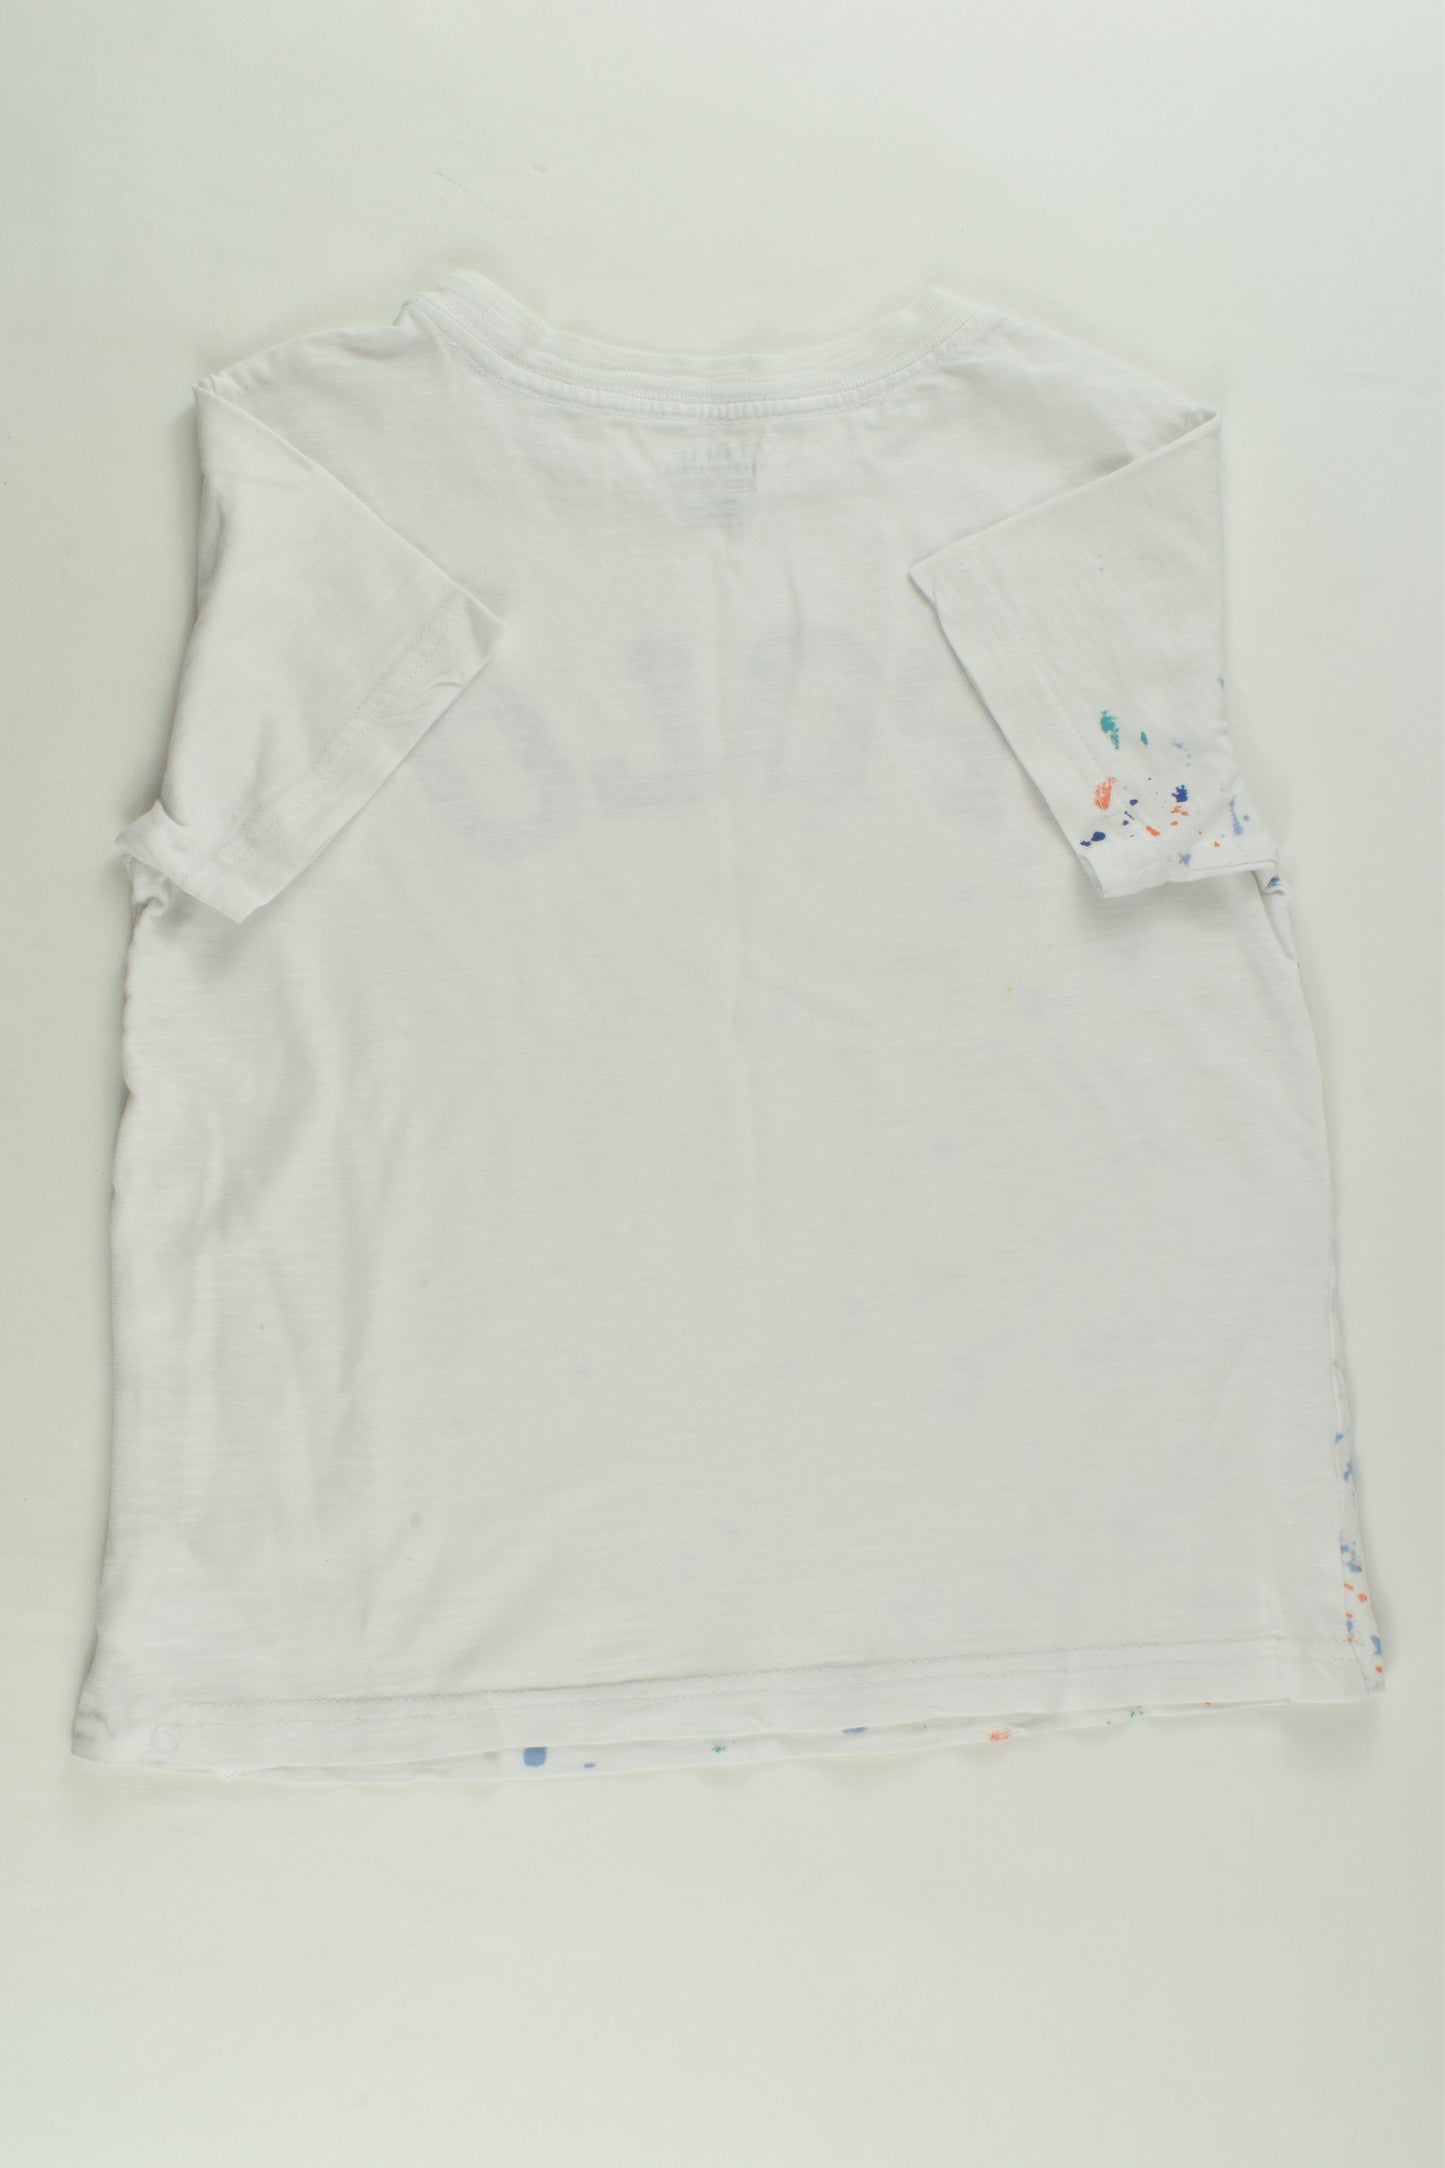 Polo Ralph Lauren Size 4 T-shirt